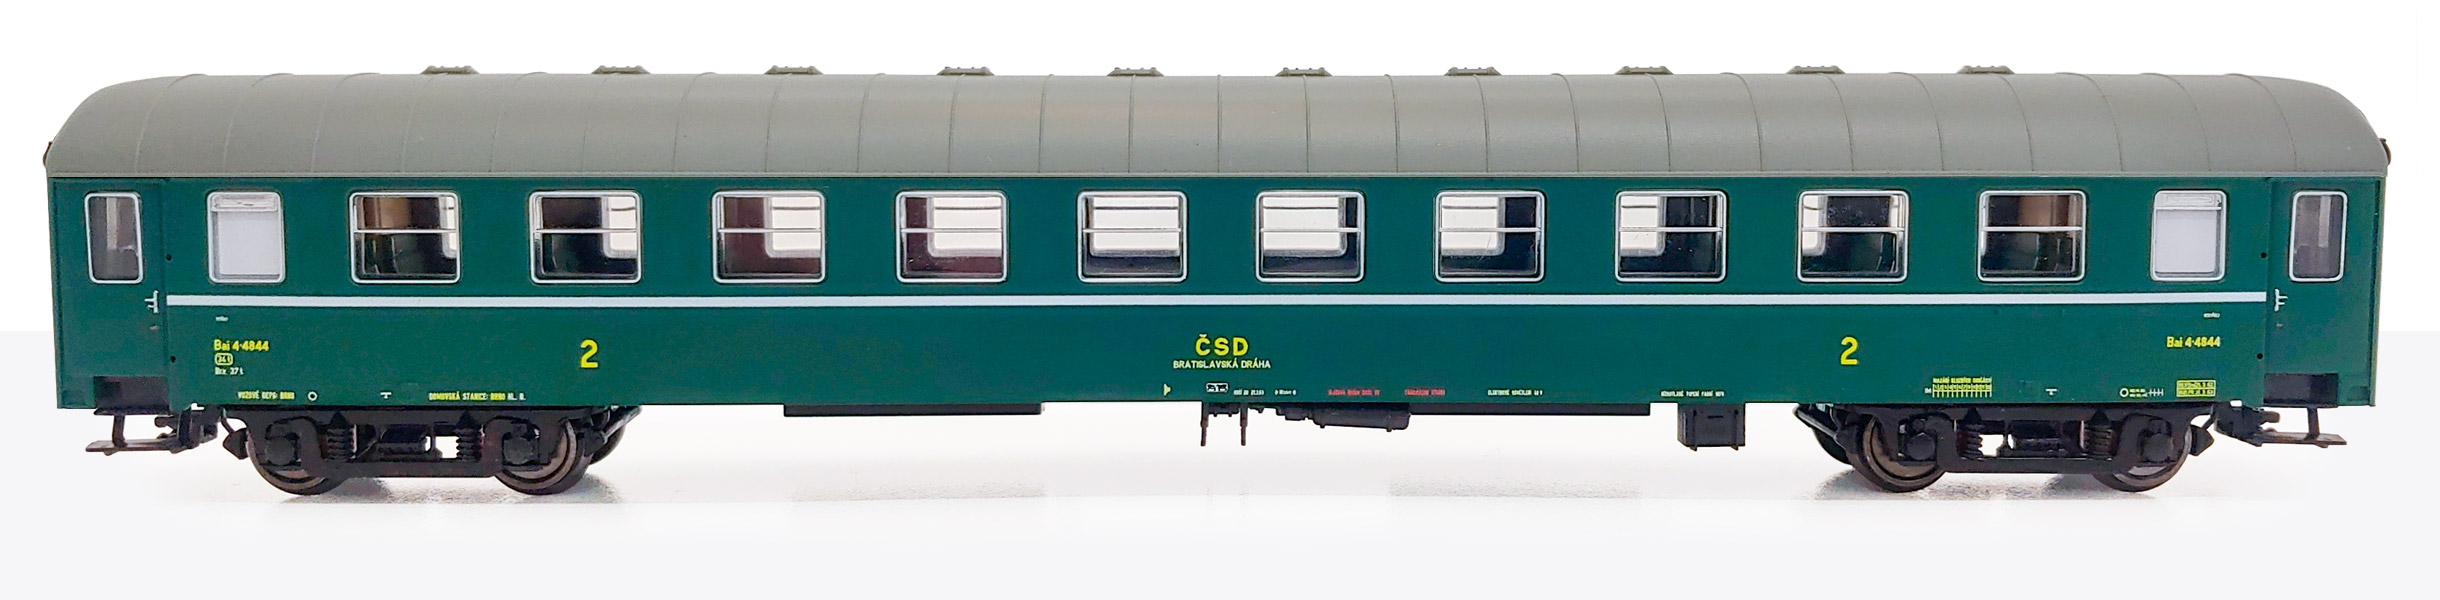 Bočný pohľad 4844 – Osobný vagón Bai – štvordverák ČSD TT | Kolmar